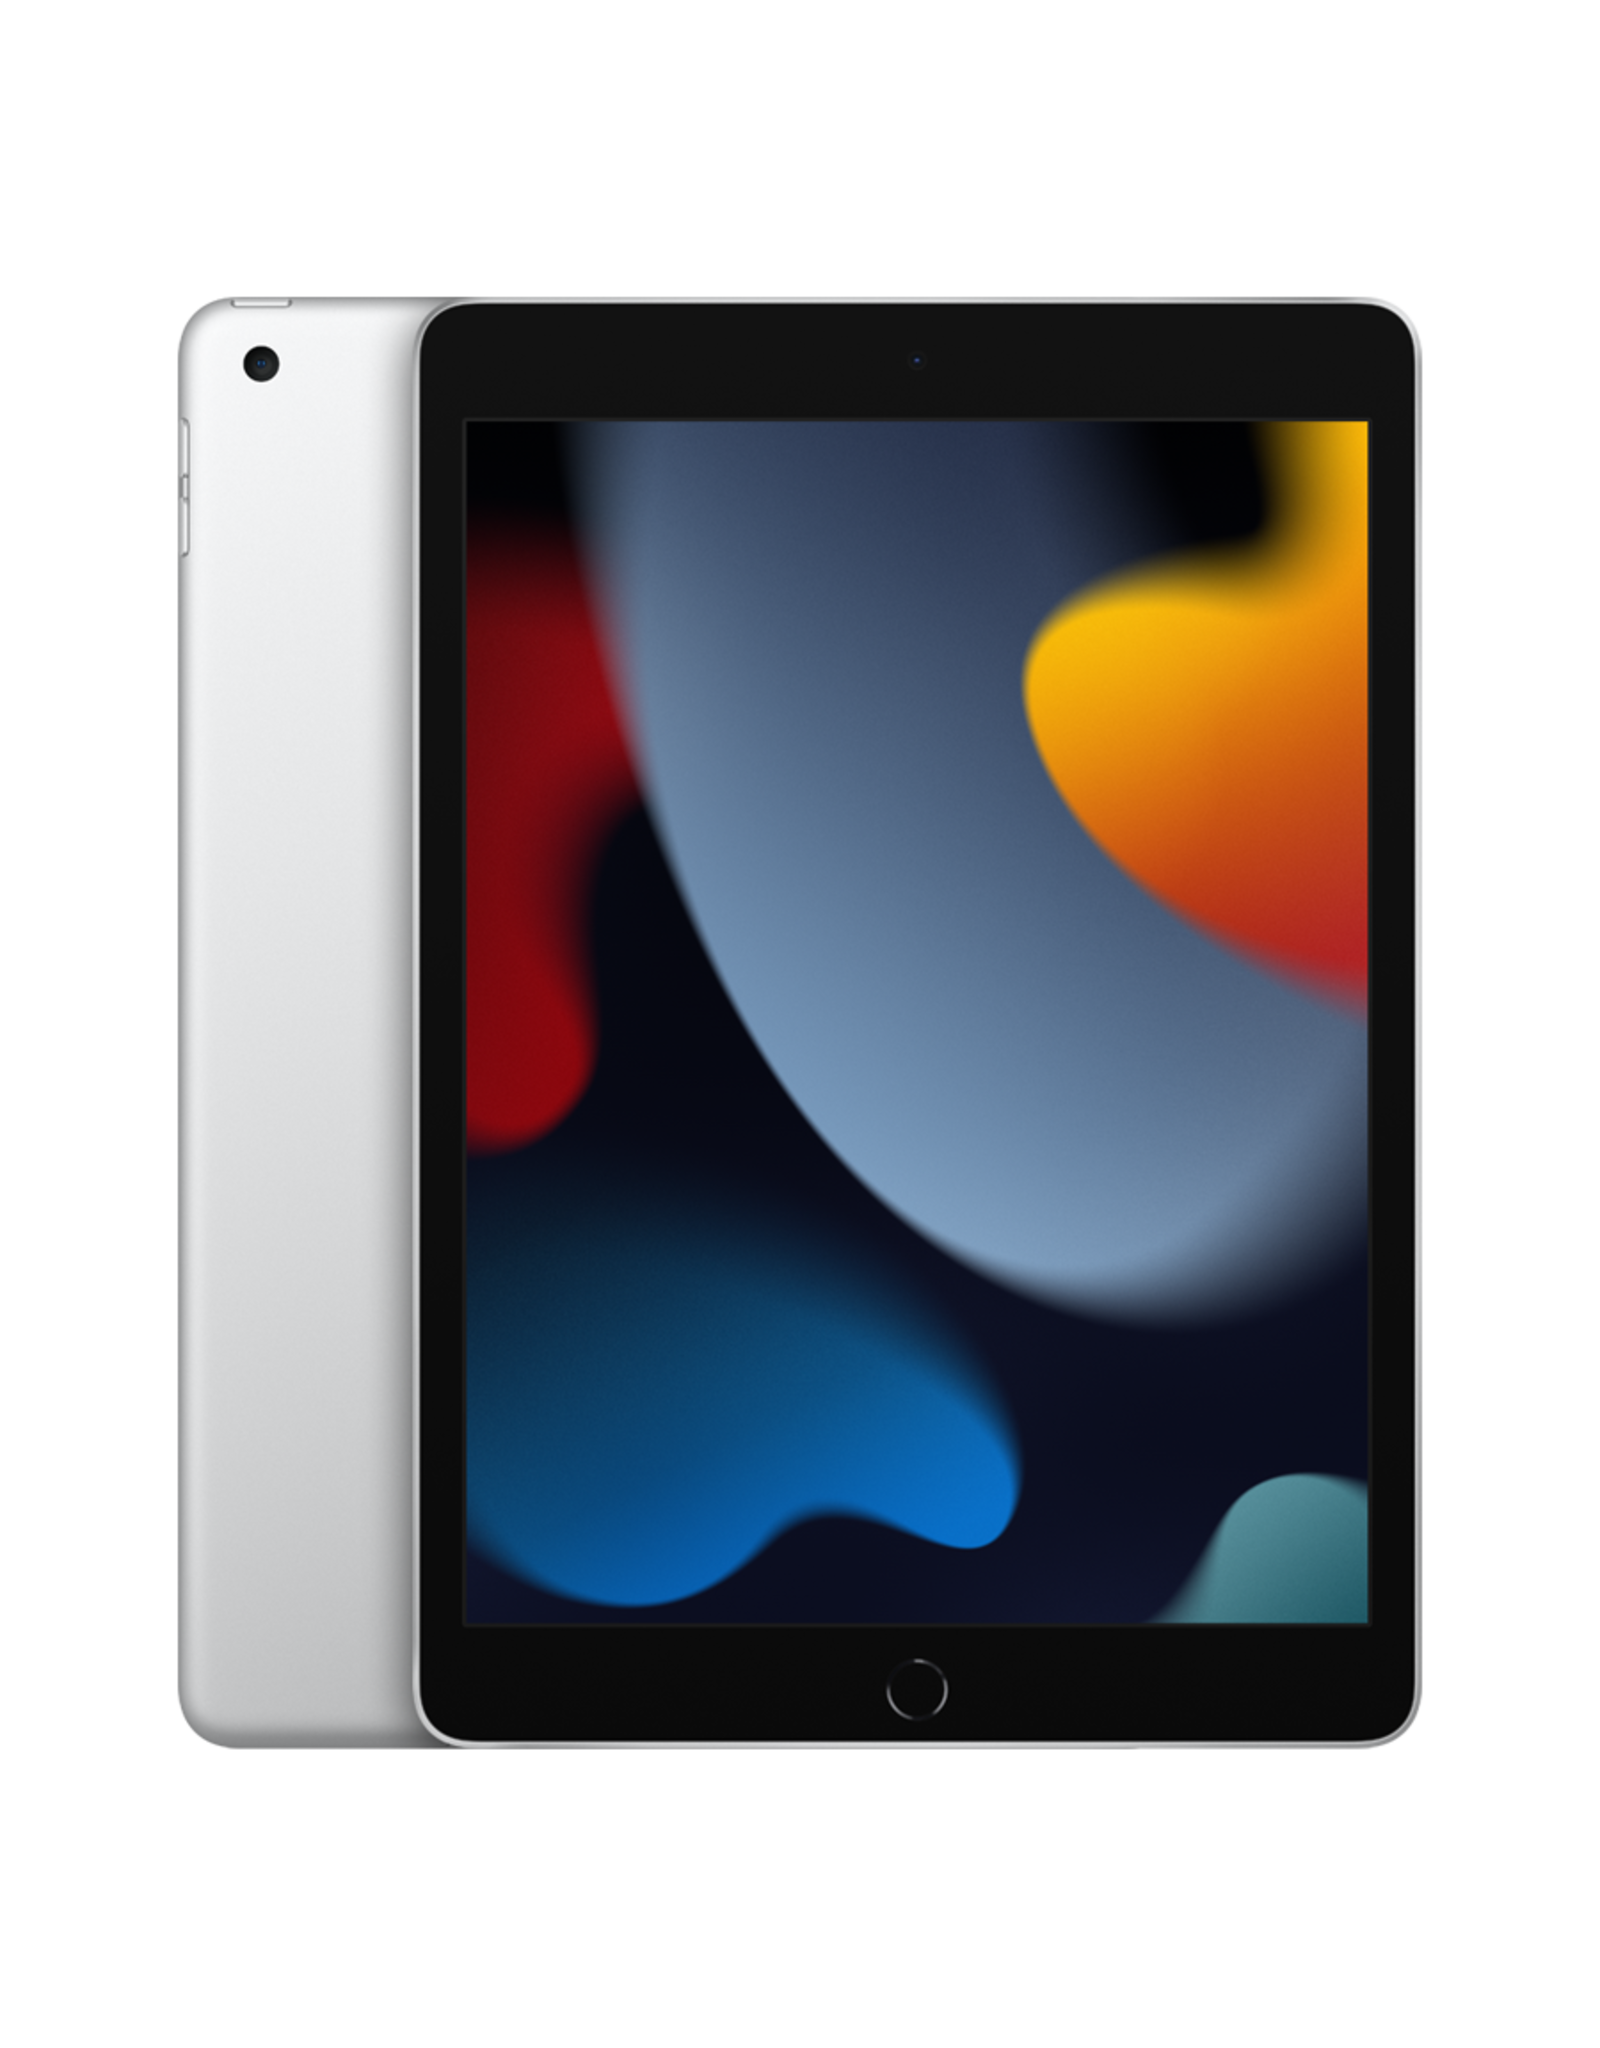 Apple 10.2-inch iPad Wi-Fi 256GB - Silver